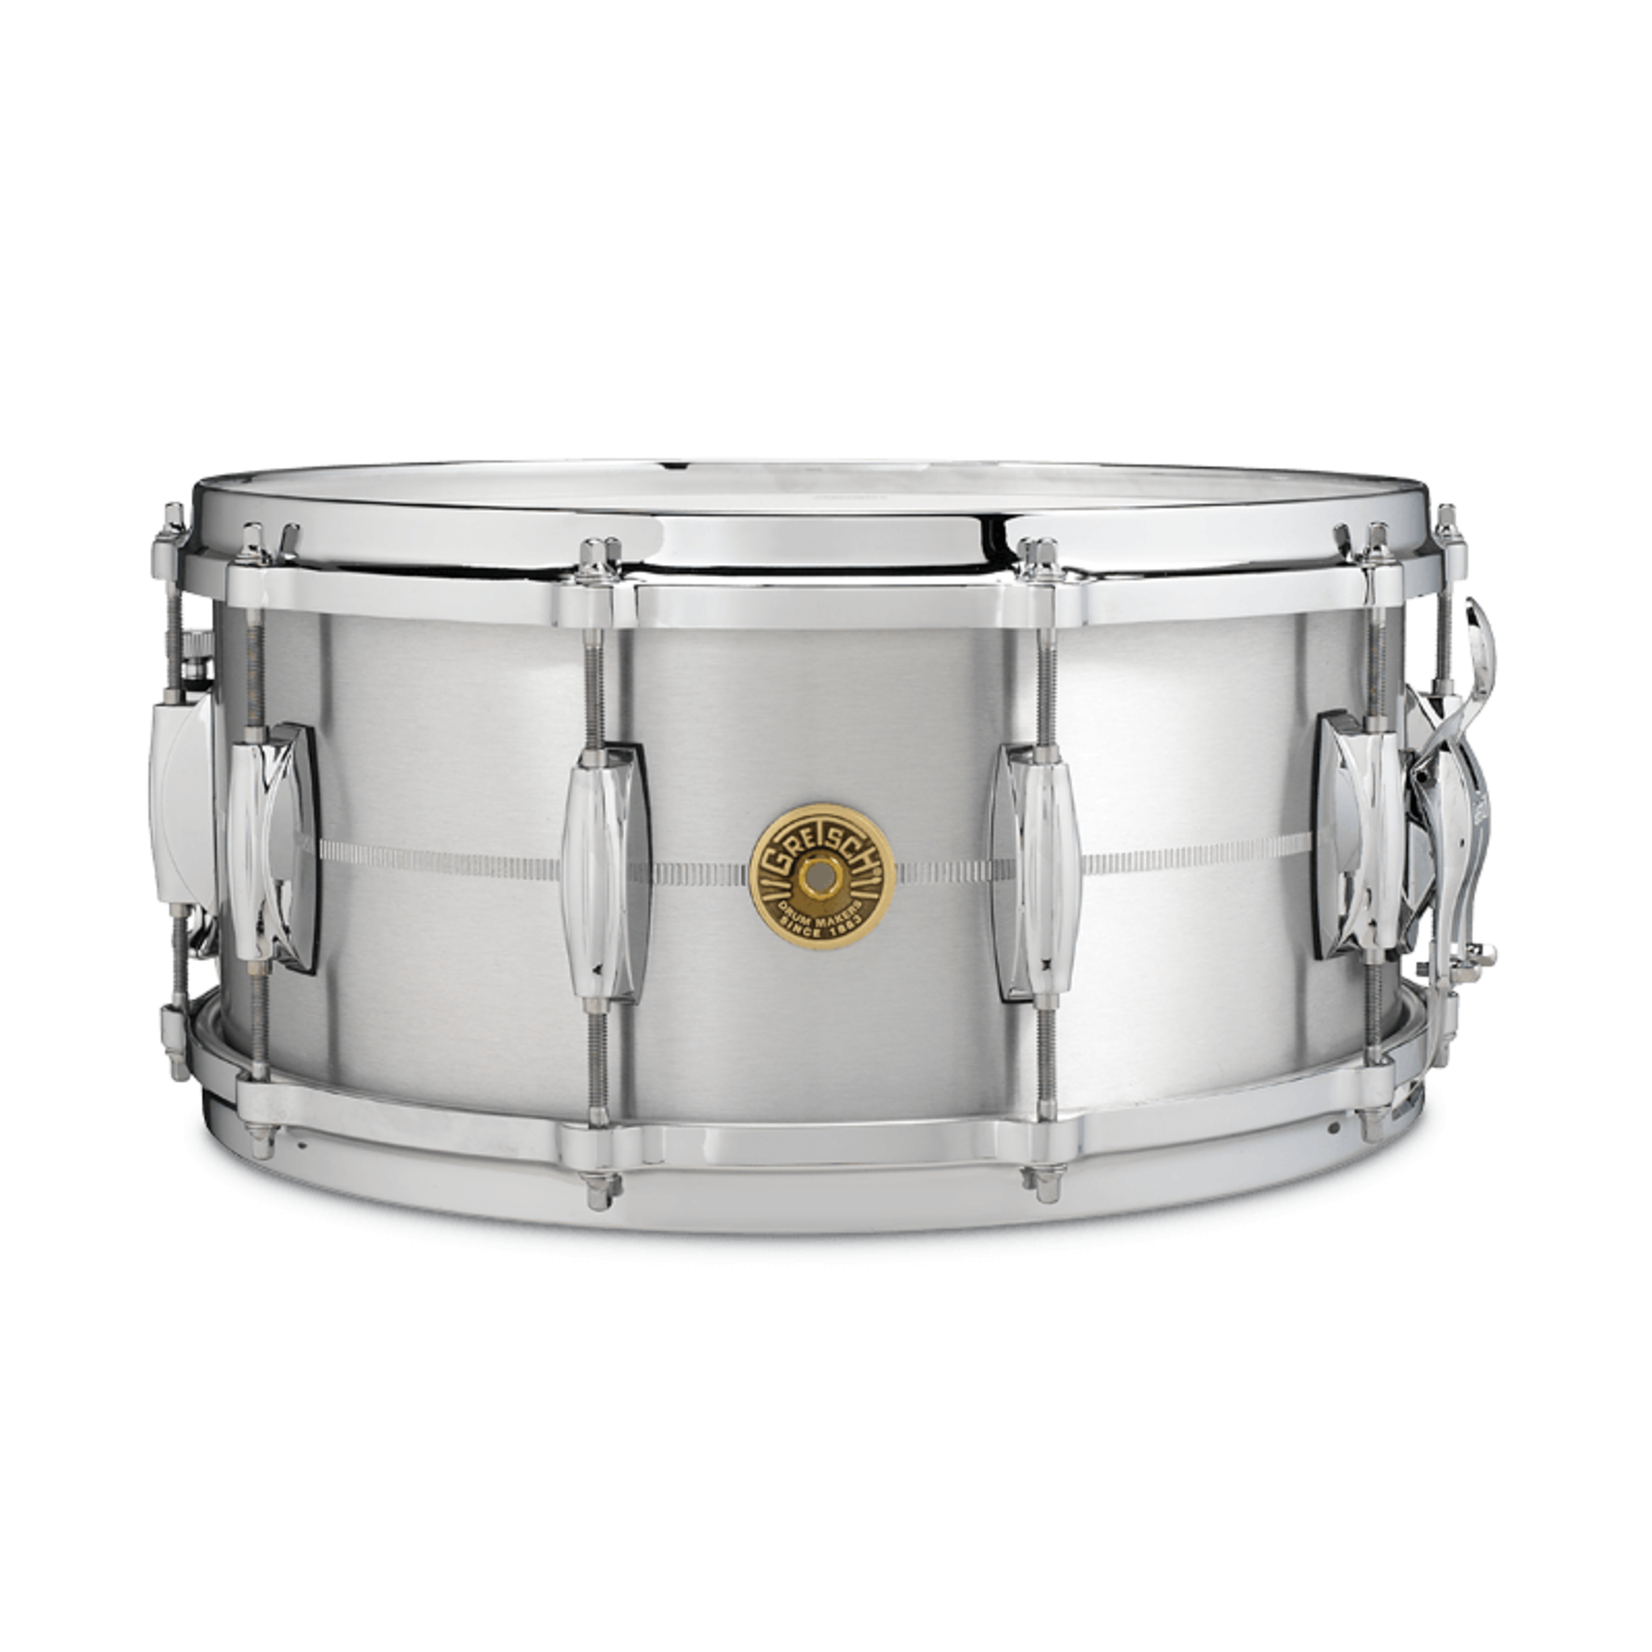 Gretsch Gretsch USA Custom 6.5x14" Solid Aluminum Snare Drum